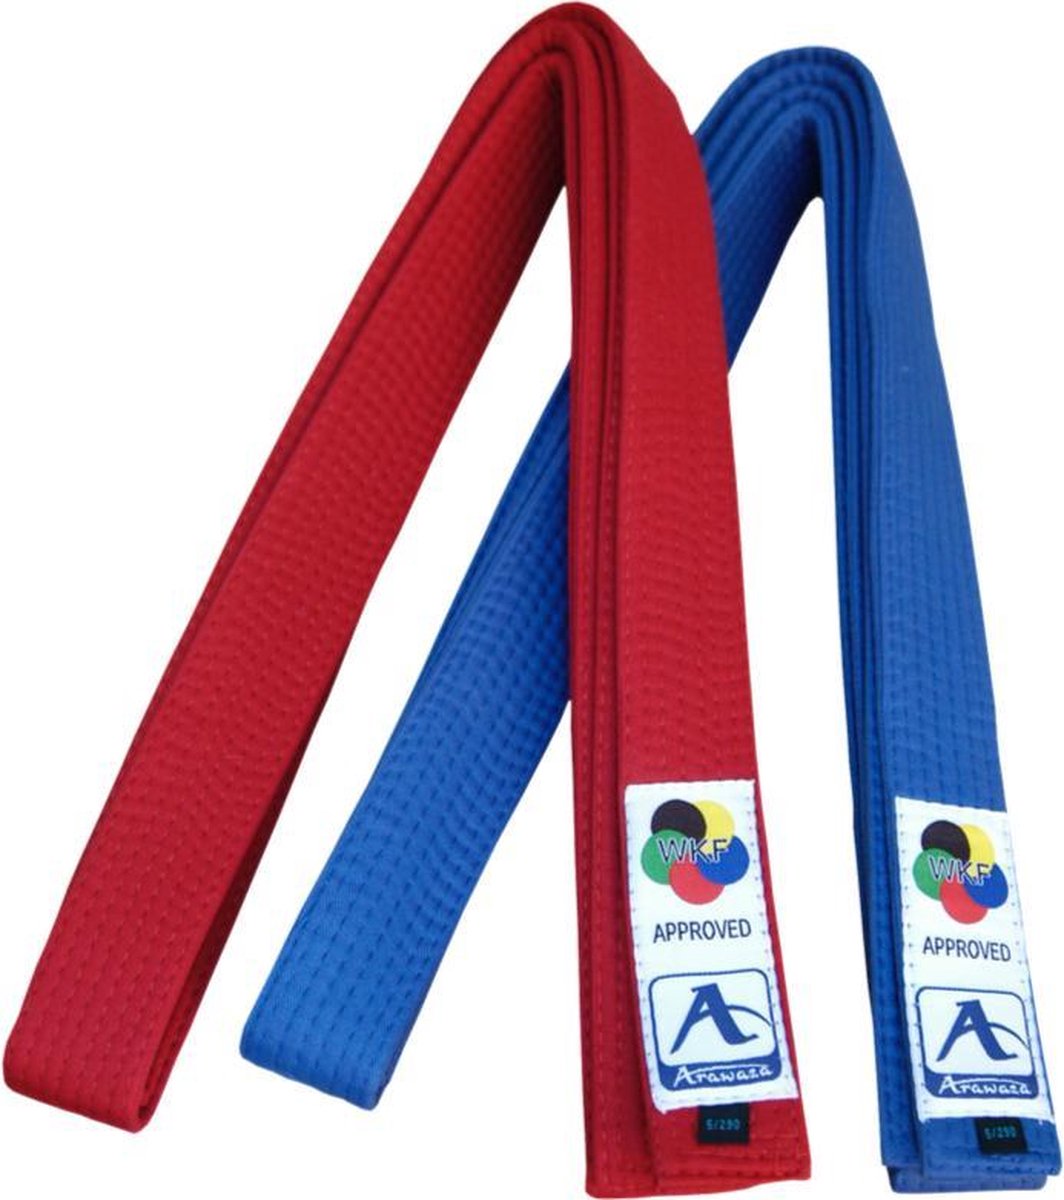 Karateband voor kumite (competitie) Arawaza | rood & blauw - Product Kleur: Rood / Product Maat: 260